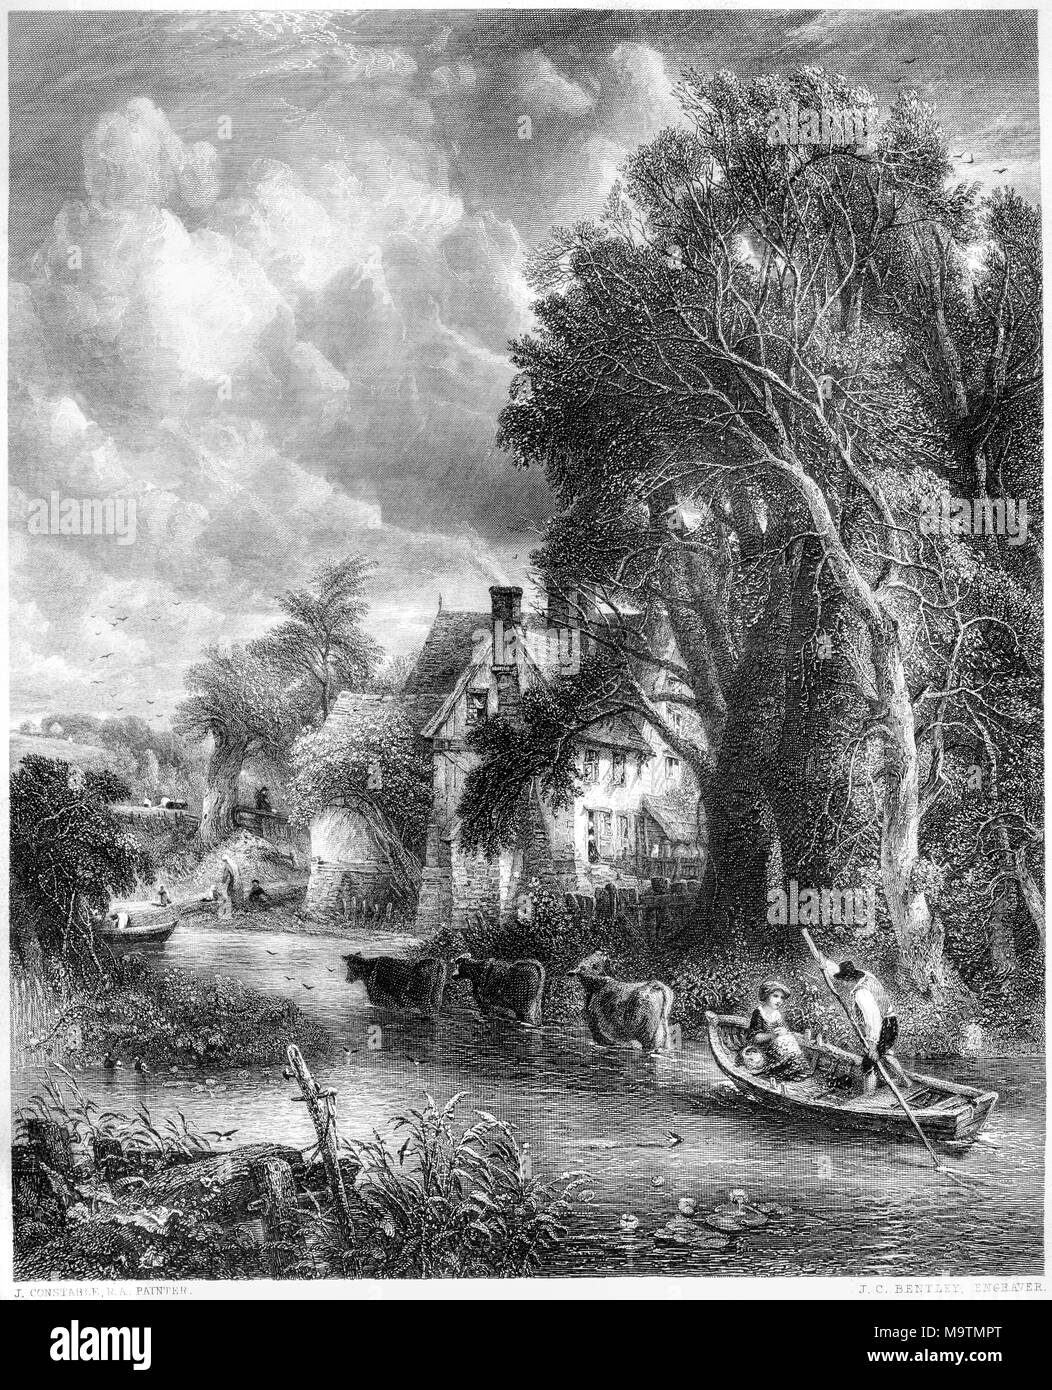 Une gravure intitulée La ferme de la vallée de la photo par John Constable à la galerie Vernon numérisées à haute résolution à partir d'un livre imprimé en 1849. Banque D'Images